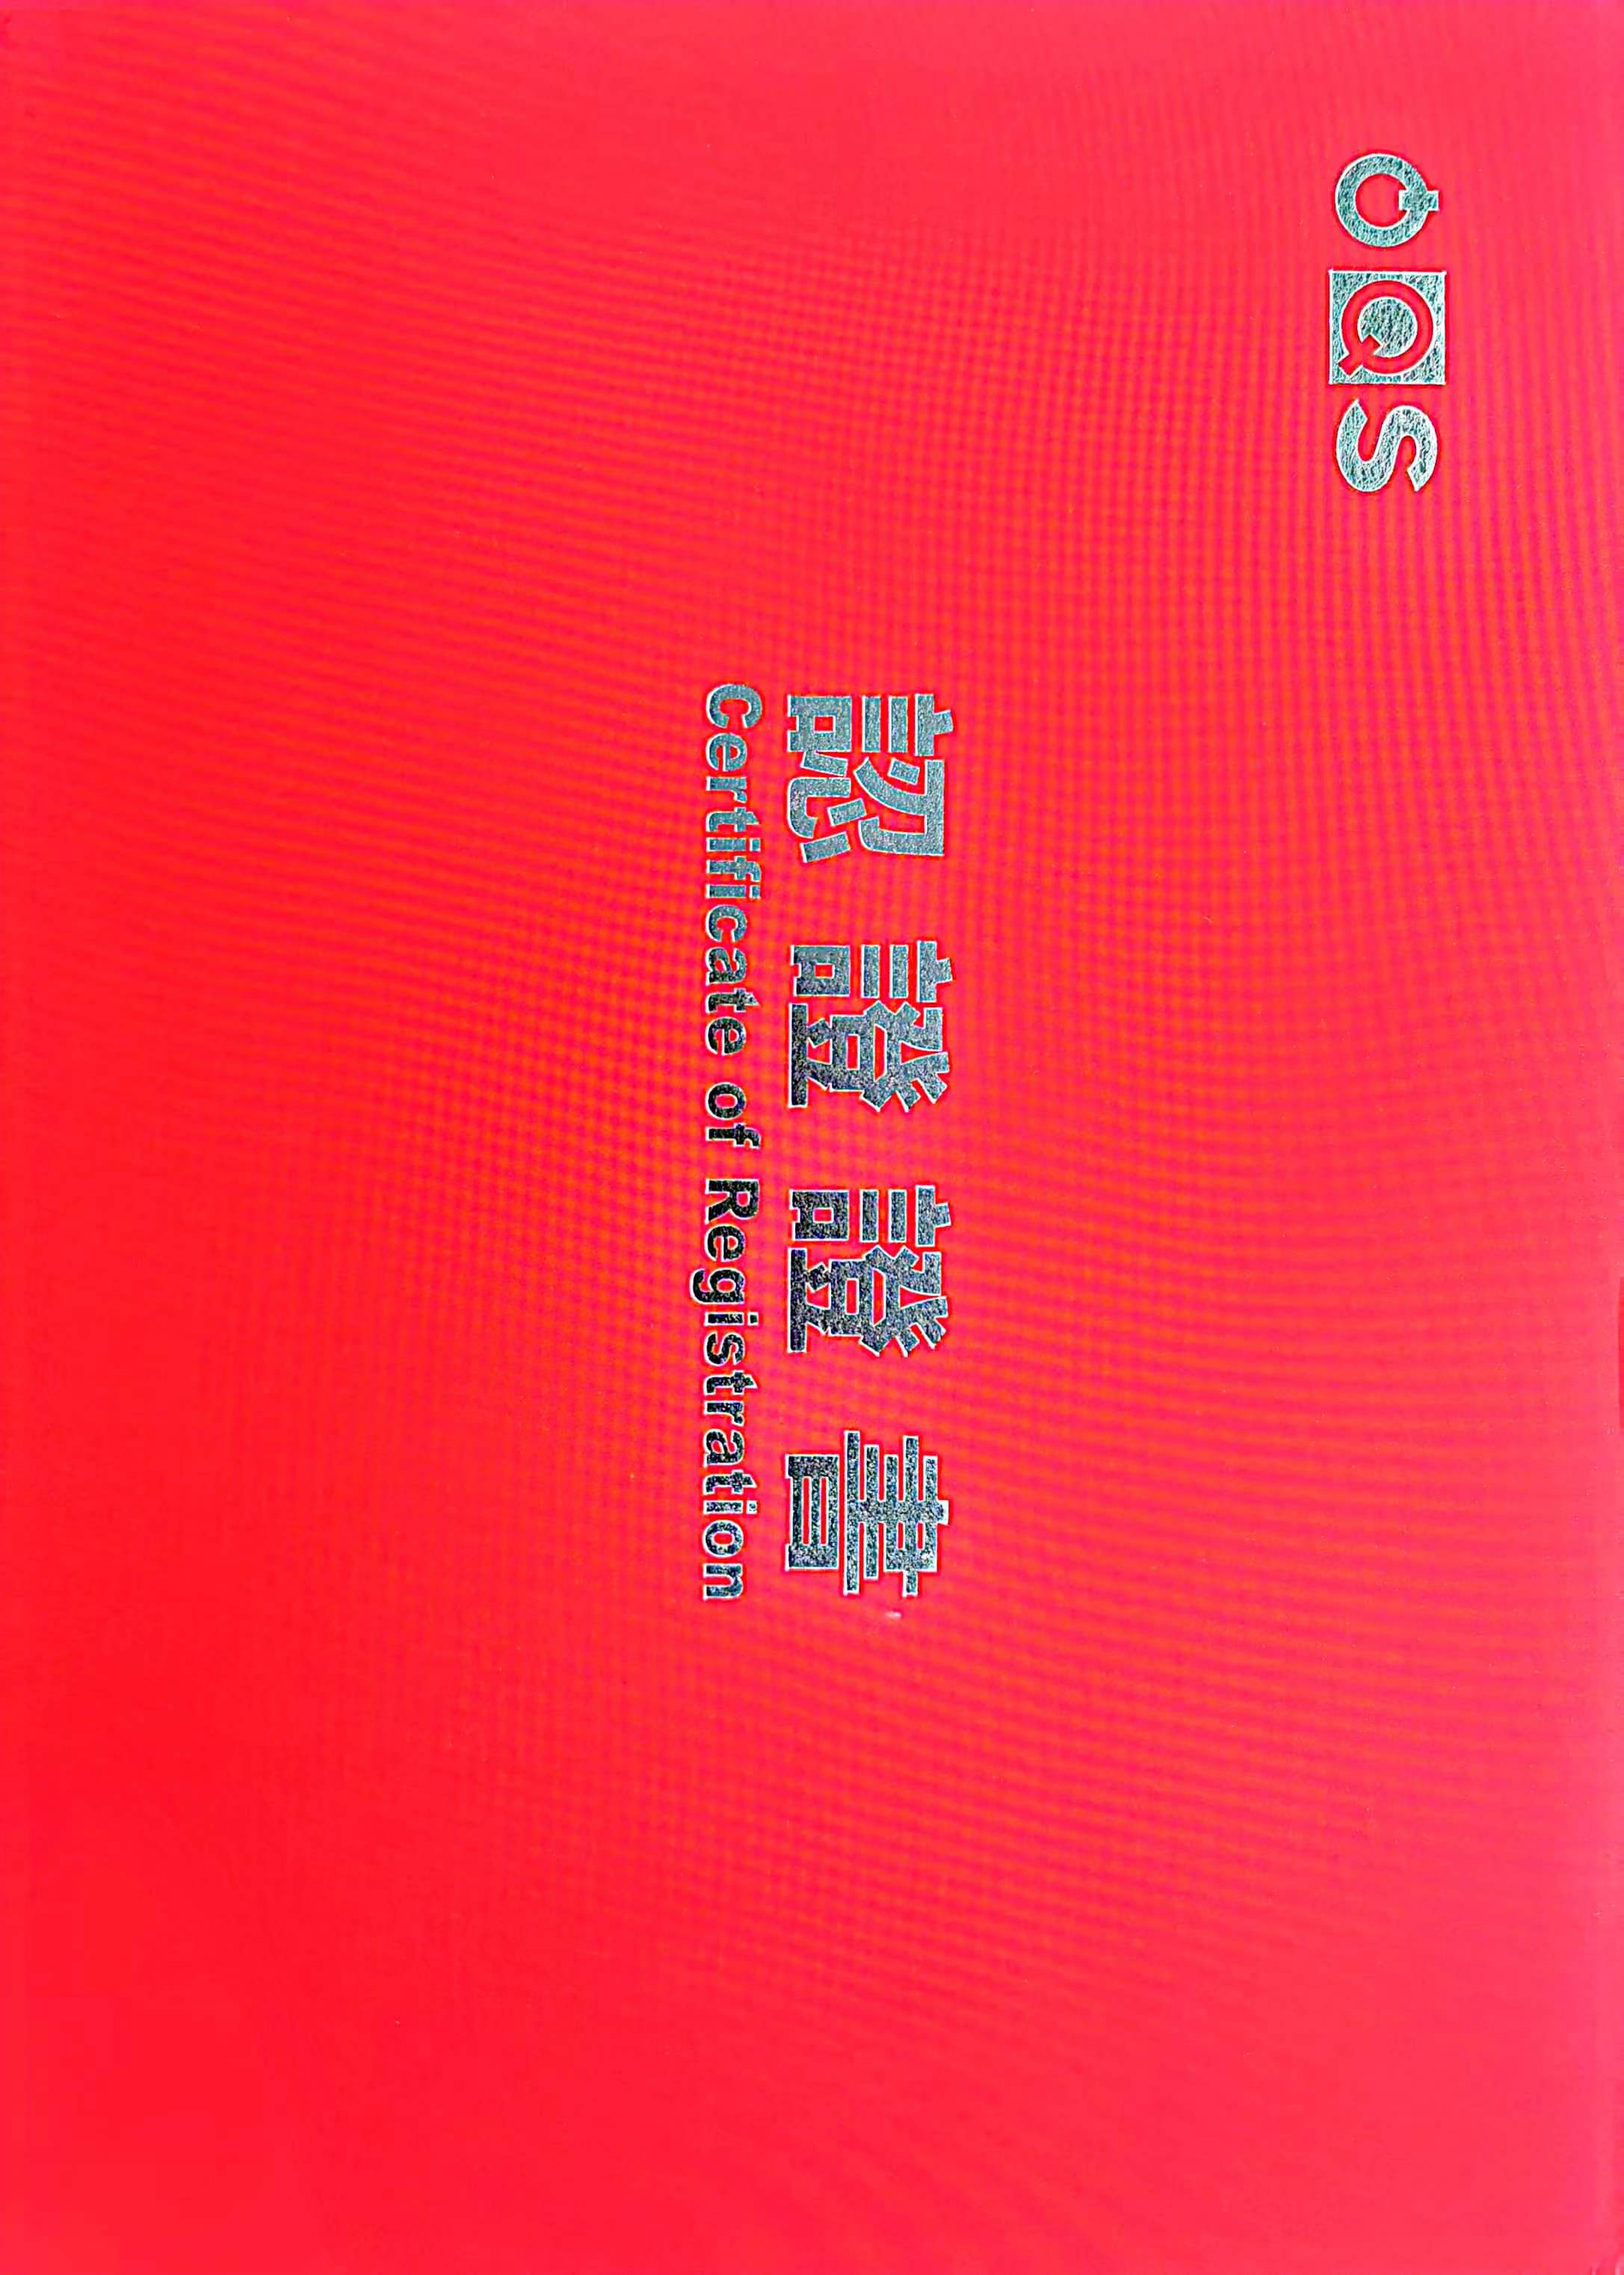 Hebei Qiangsheng Machinery Parts Co., Ltd. pasigis la atestilon IATF19649.